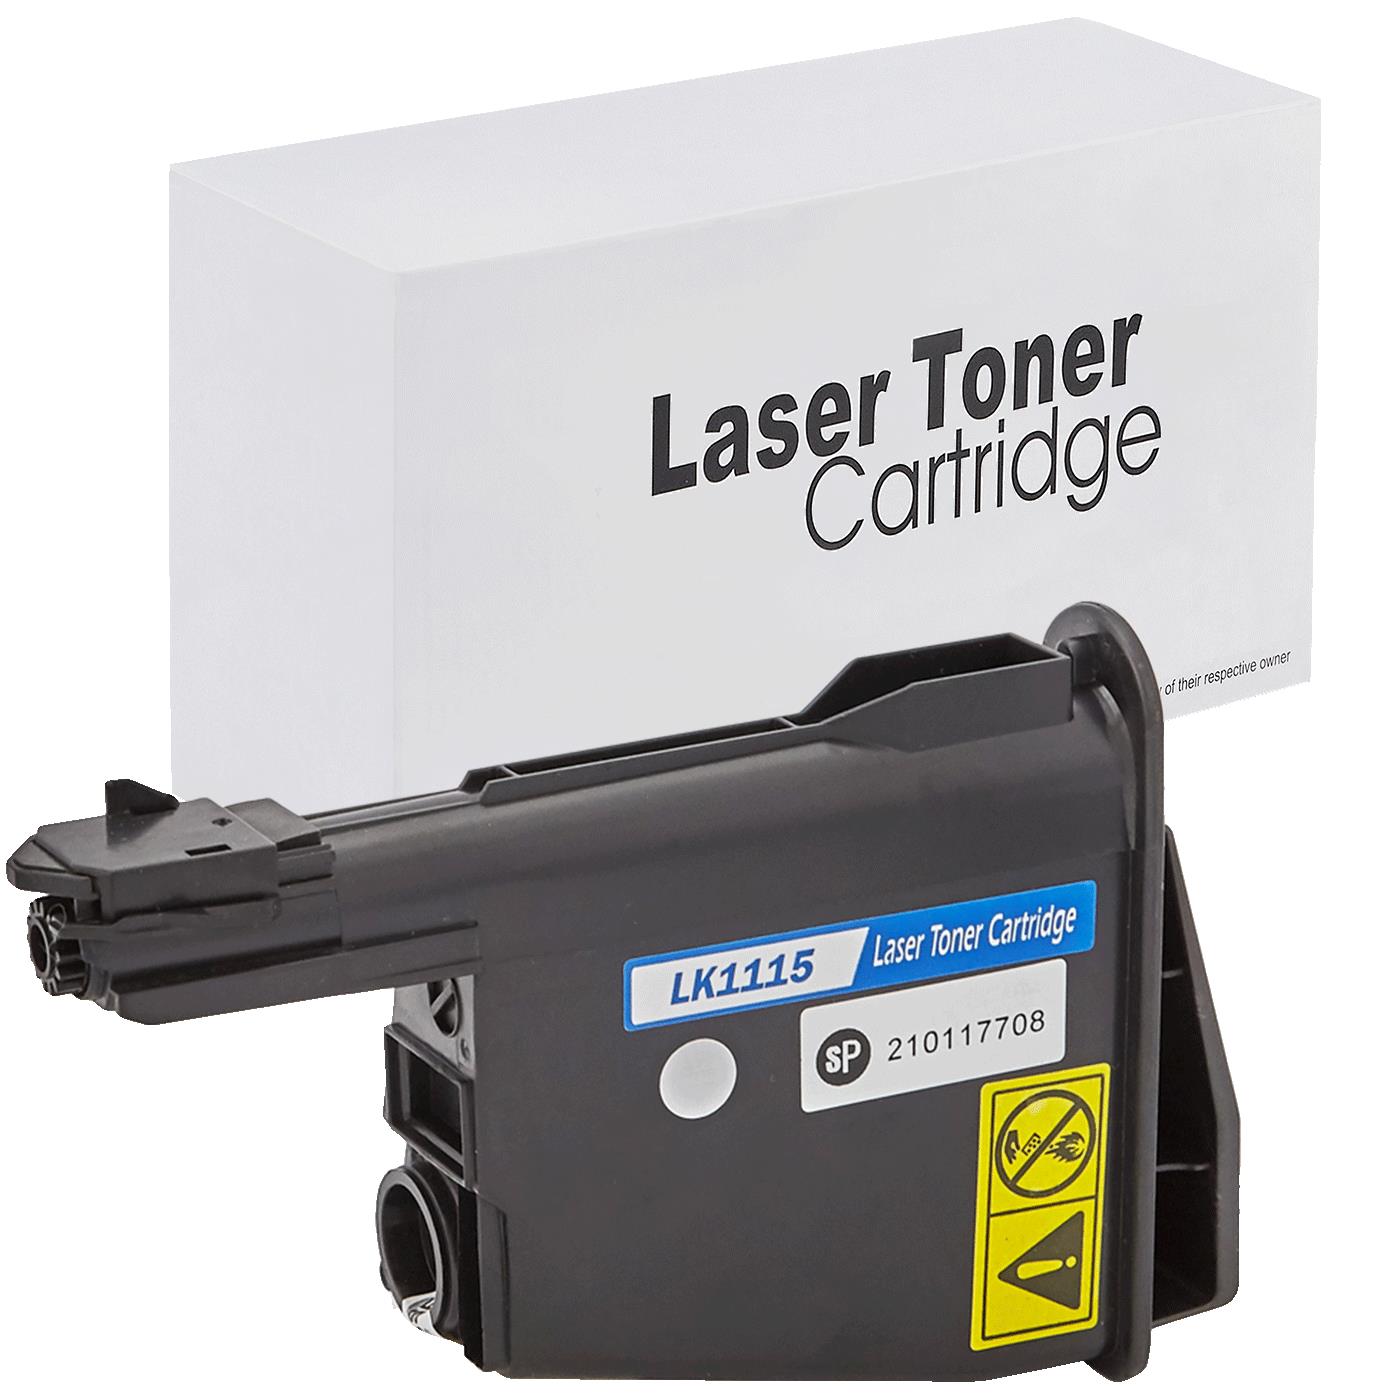 съвместима тонер касета за принтери и печатащи устройства на Kyocera Mita FS-1041 Toner KY-TK1115 | TK1115. Ниски цени, прецизно изпълнение, високо качество.